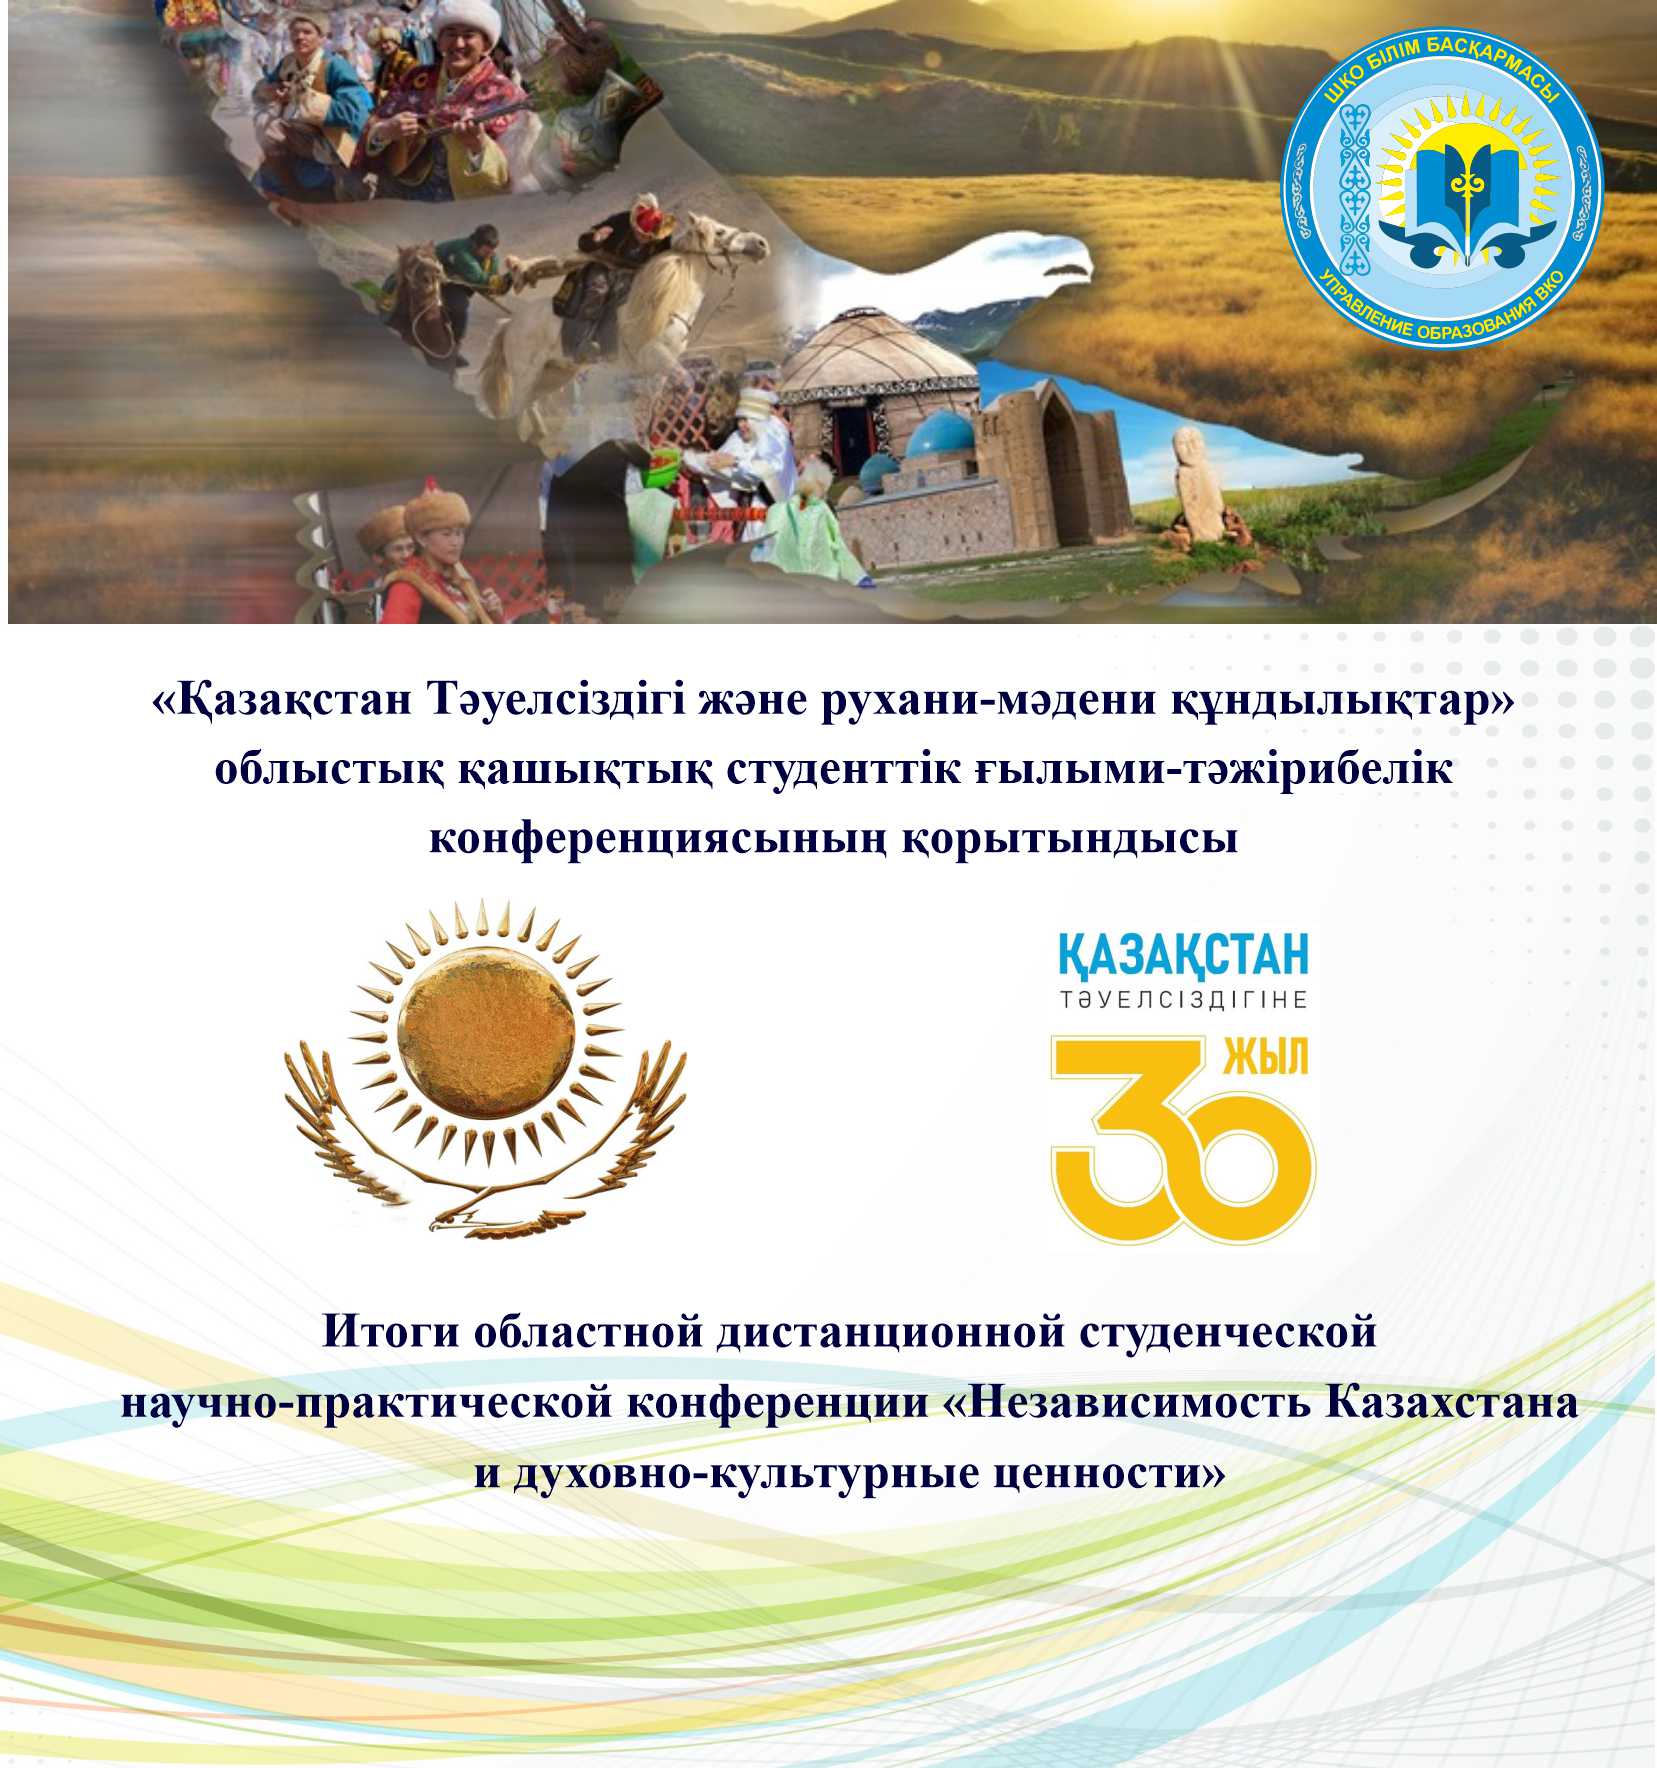 Итоги областной дистанционной студенческой научно-практической конференции «Независимость Казахстана и духовно-культурные ценности»